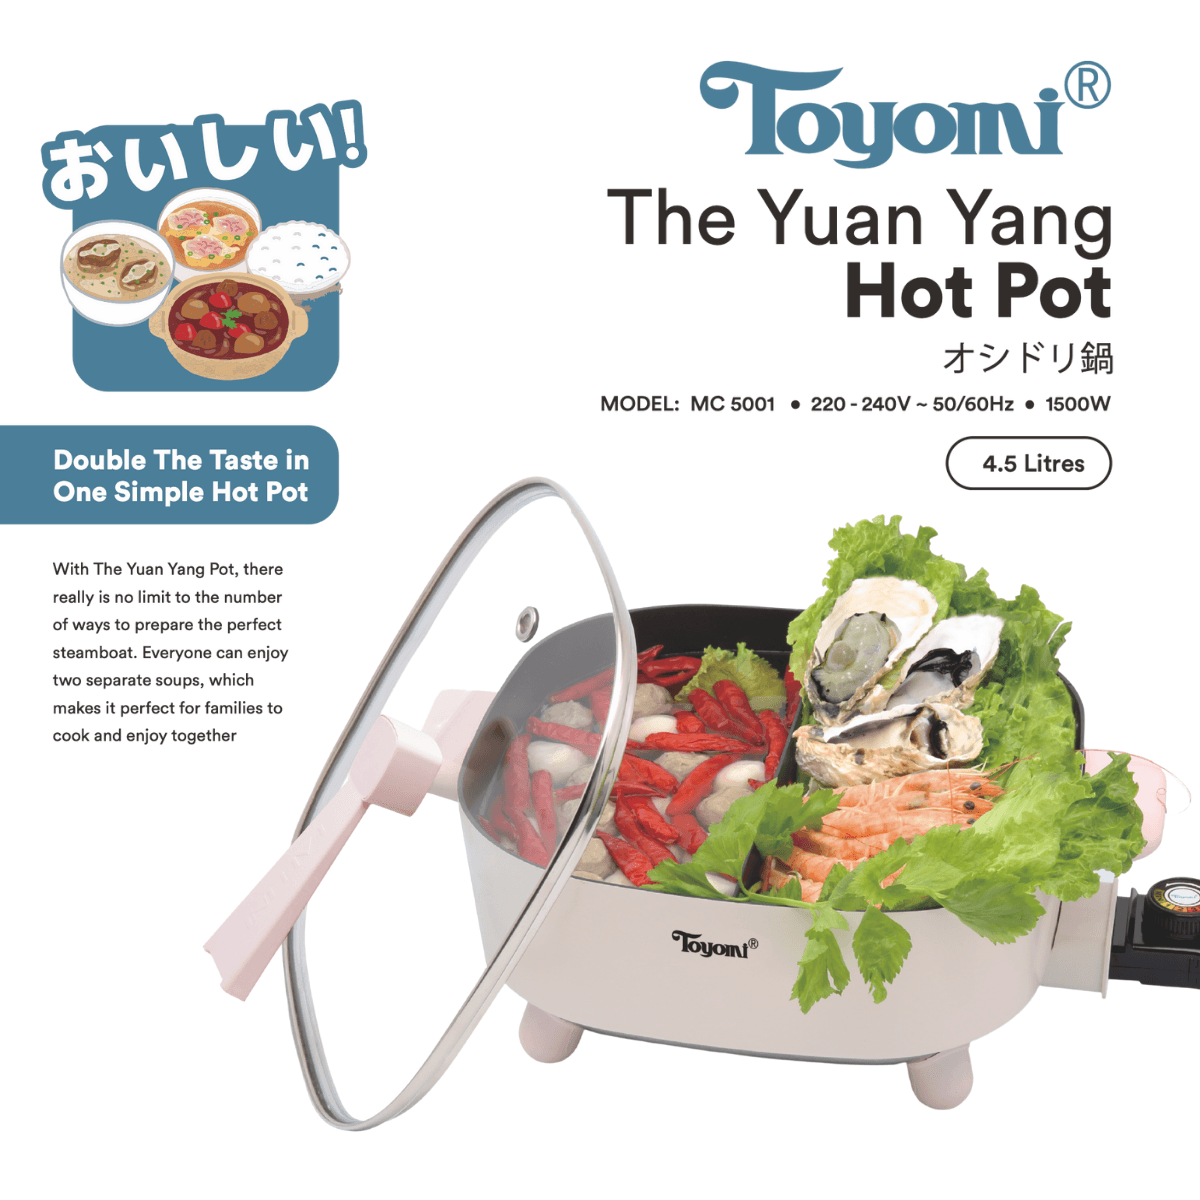 TOYOMI 4.5L Yuan Yang Hot Pot MC 5001 Singapore